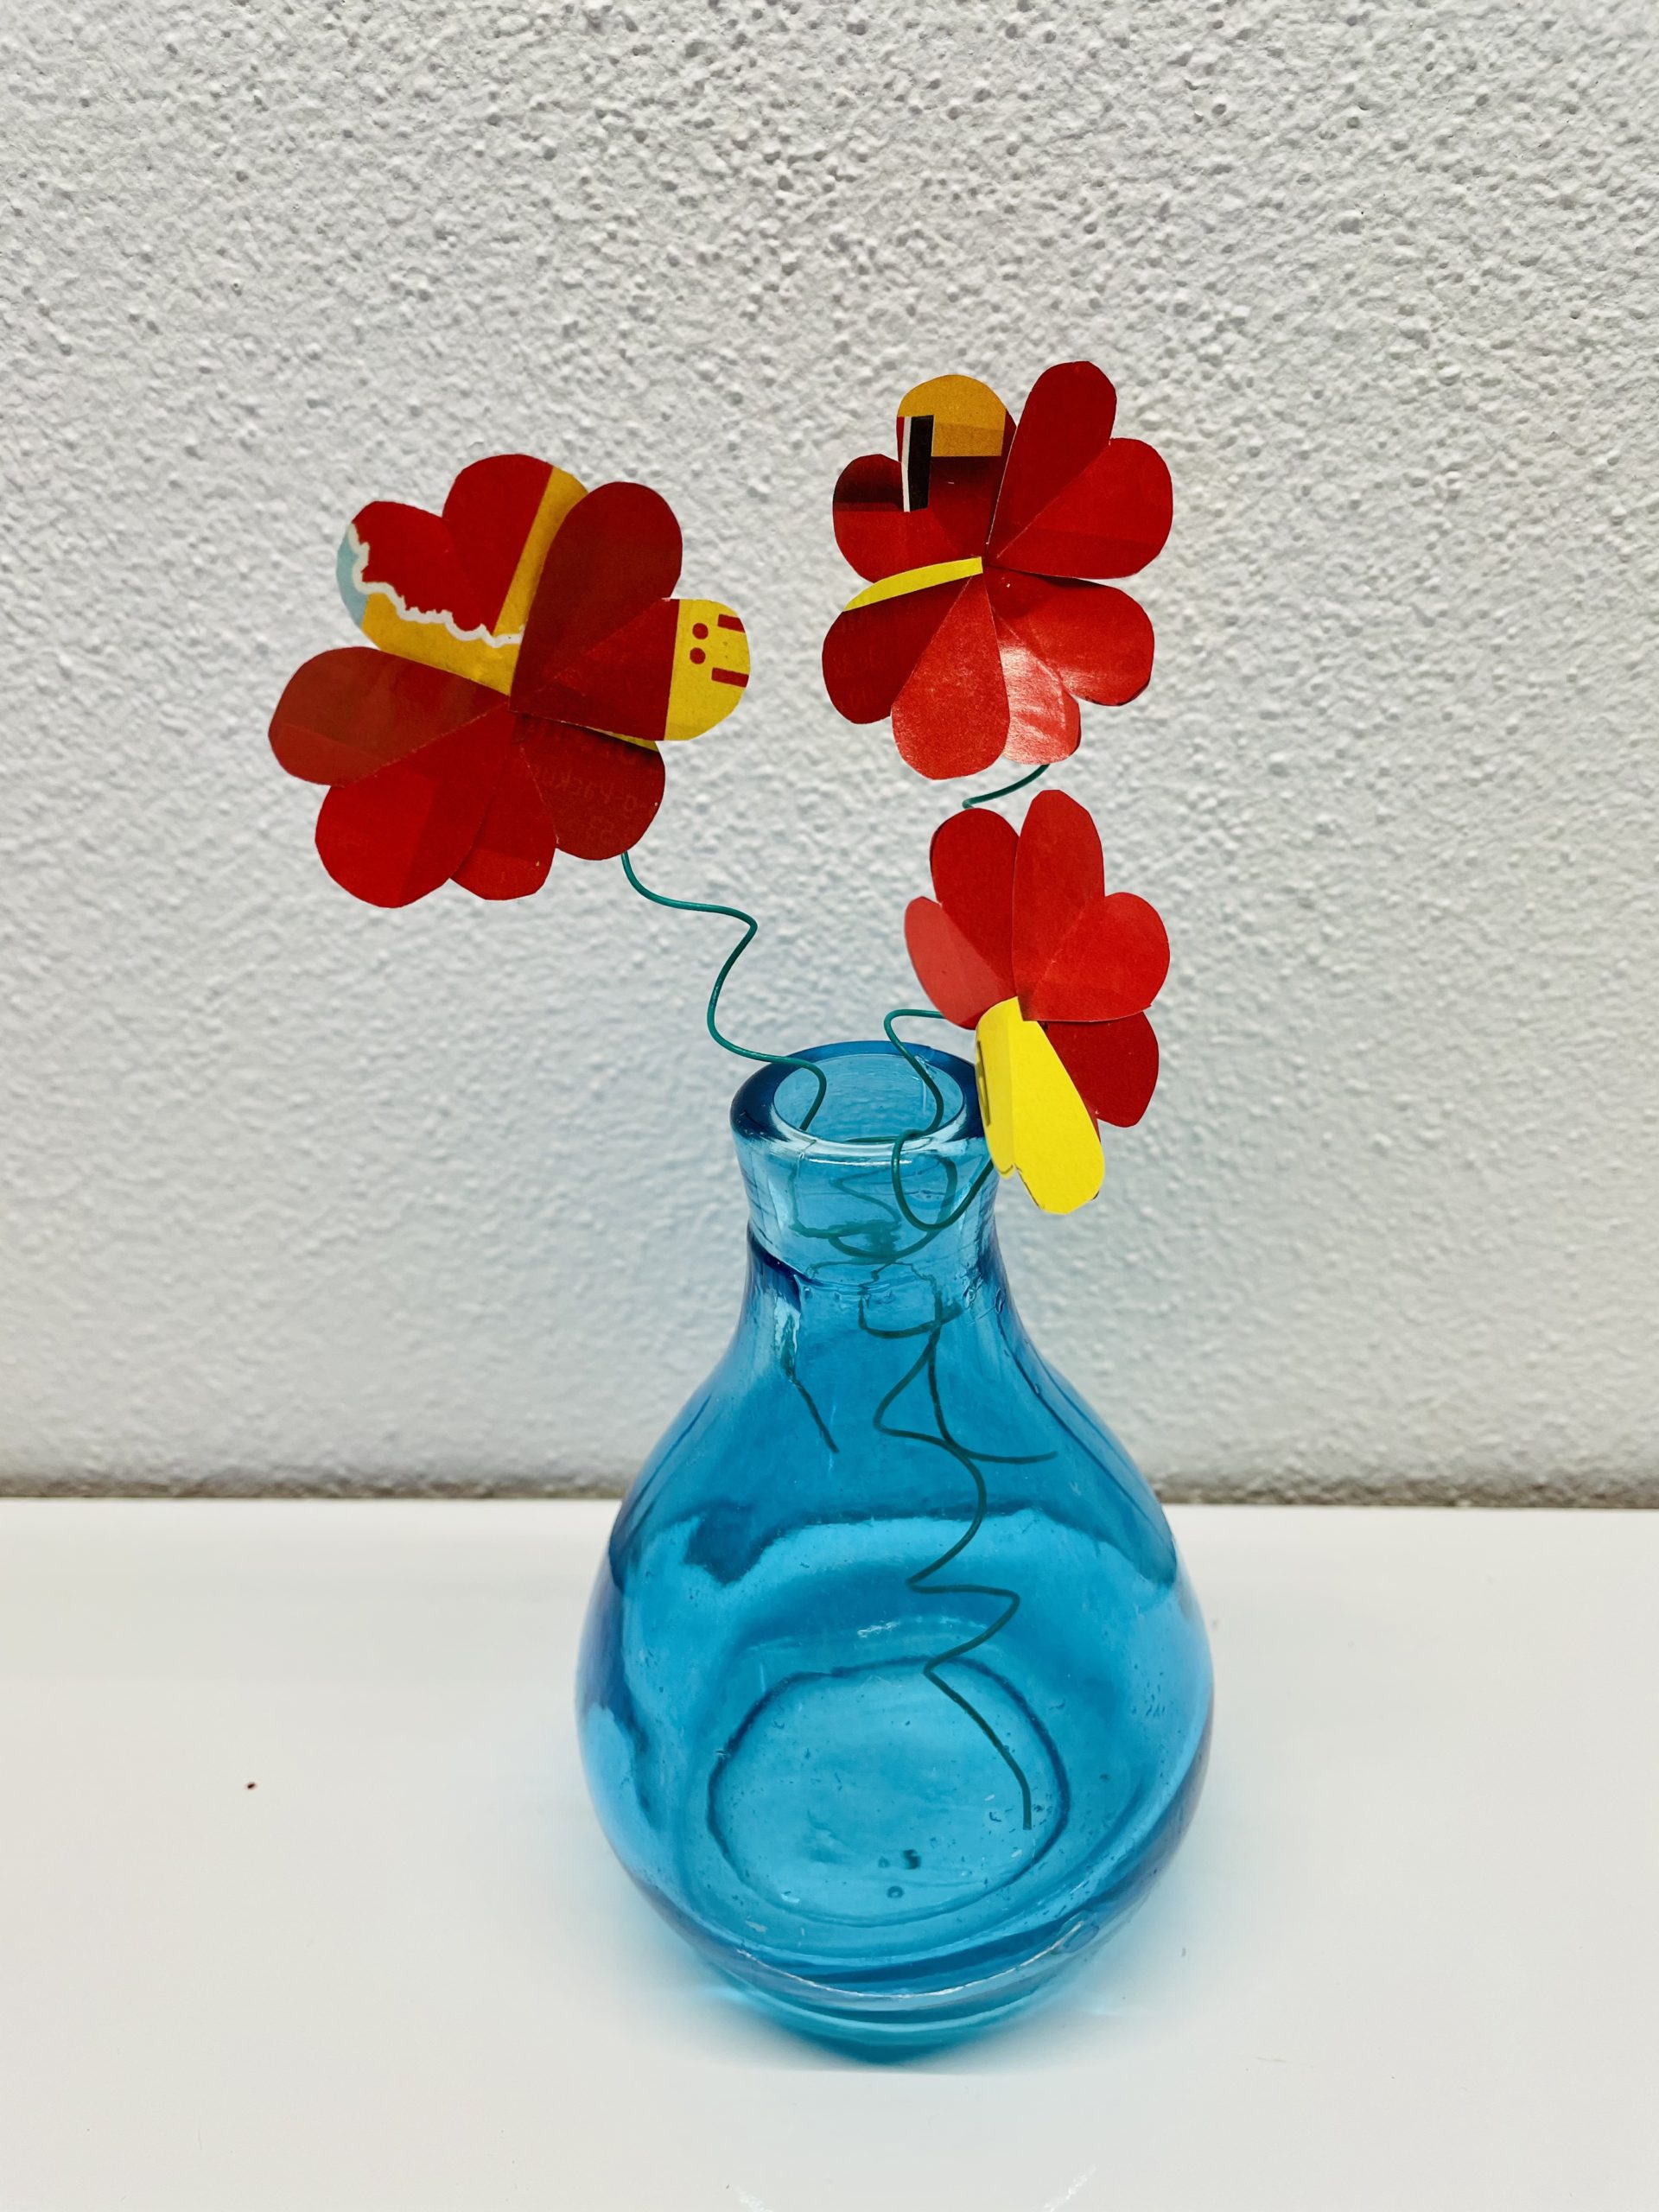 Bild zum Schritt 17 für das Bastel- und DIY-Abenteuer für Kinder: 'Ihr könnt sie in eine Vase stellen, oder'